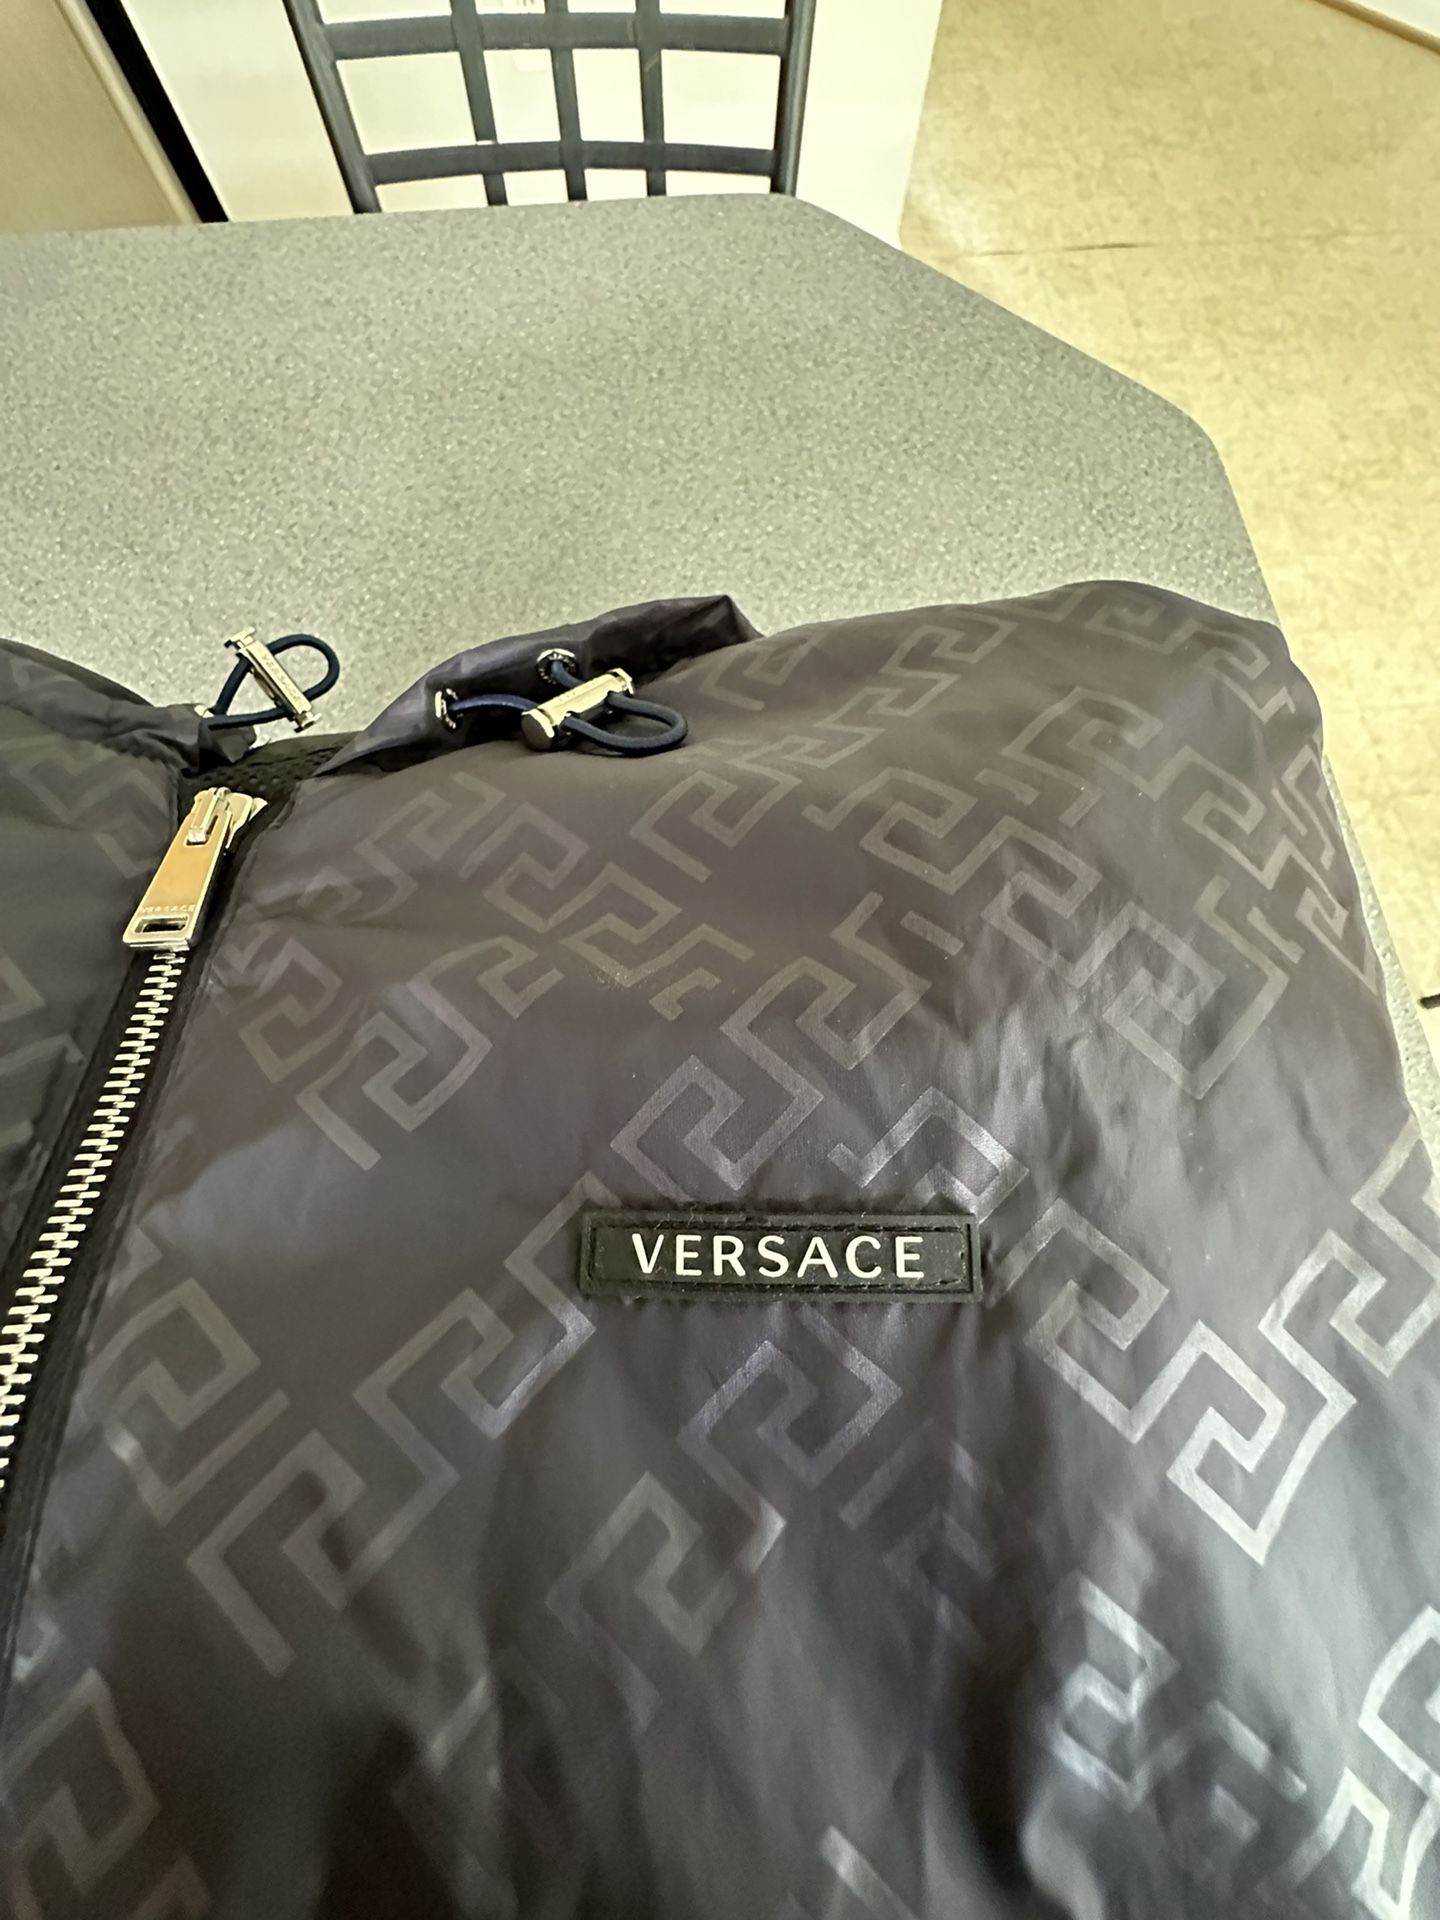 Versace Winbreaker for Sale in White Oak, MD - OfferUp